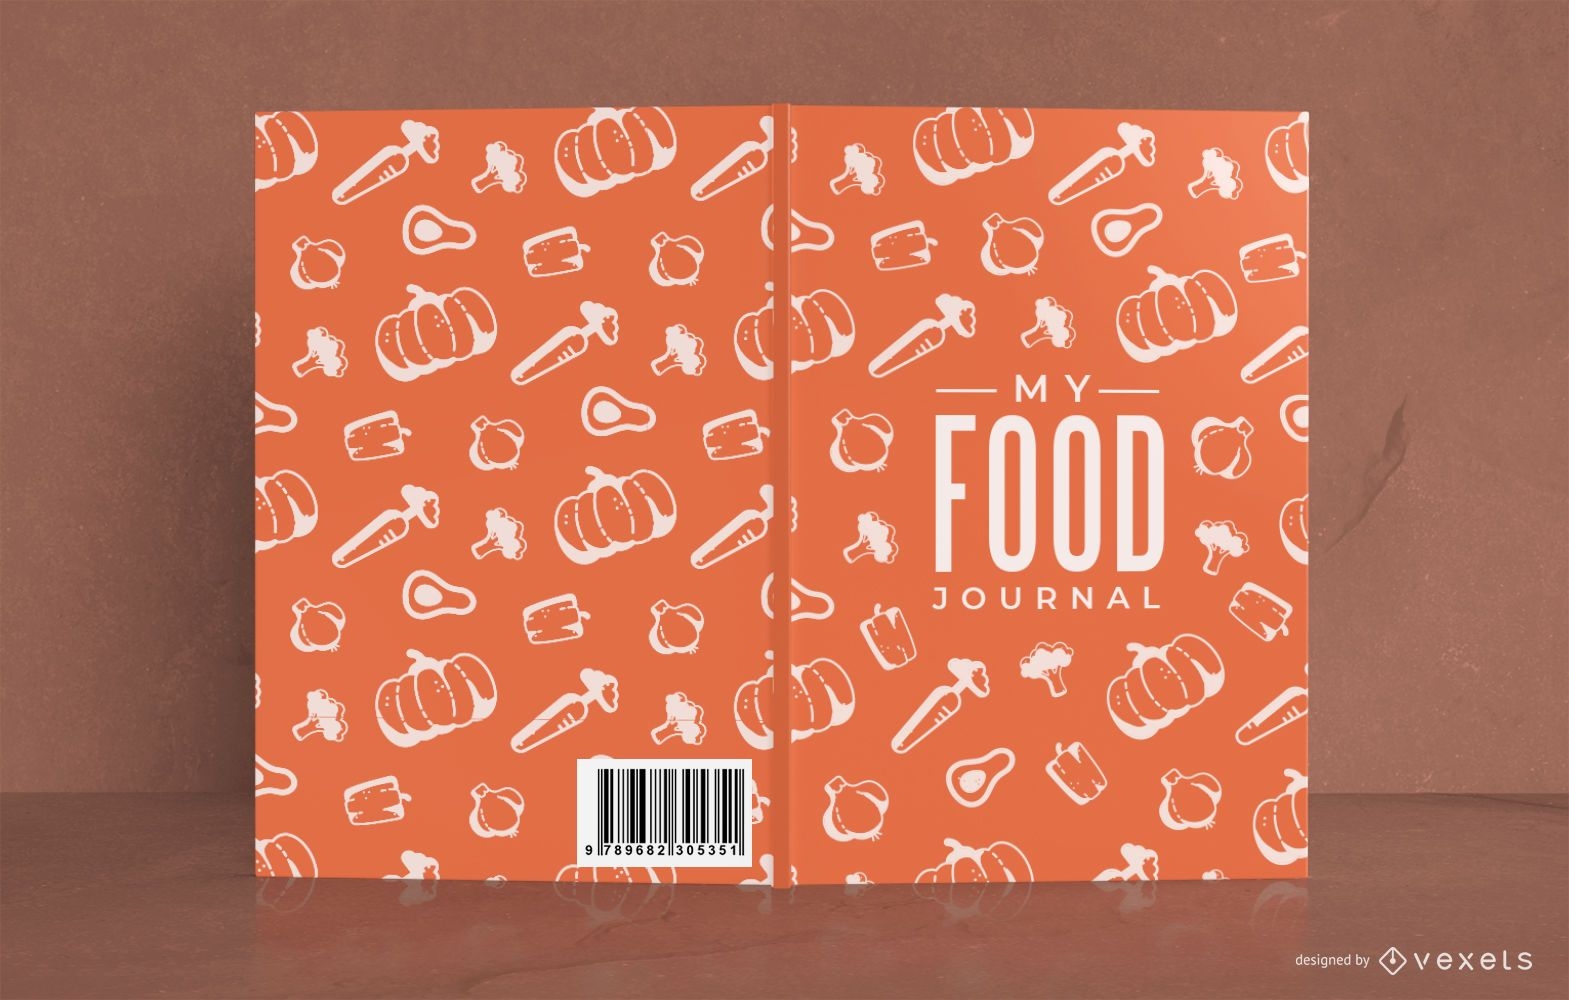 Design da capa padr?o do My Food Journal